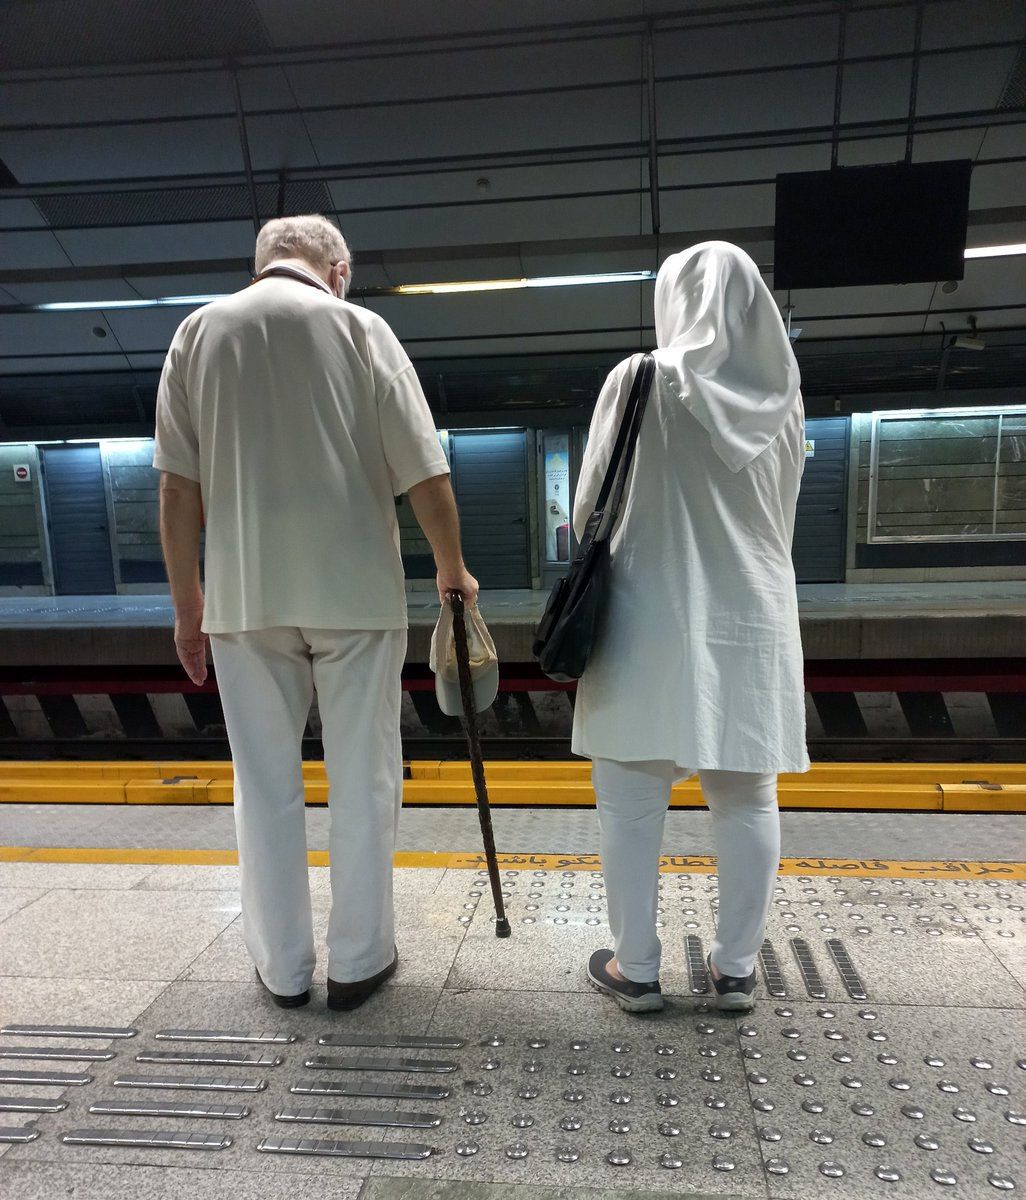 عکسی از دو مسافر خاصِ متروی تهران پربازدید شد